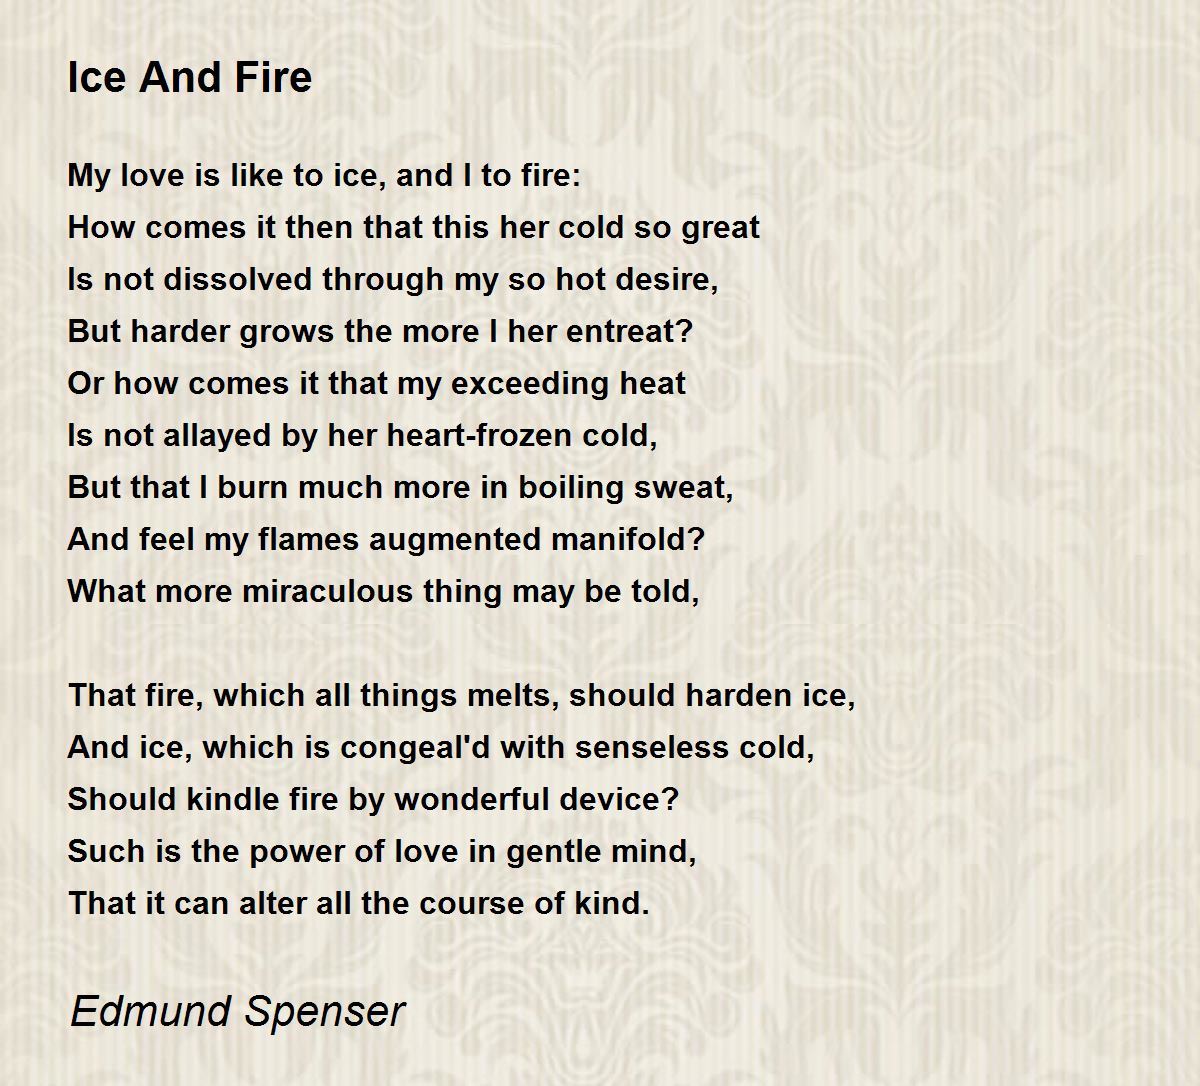 sonnet 30 edmund spenser translation